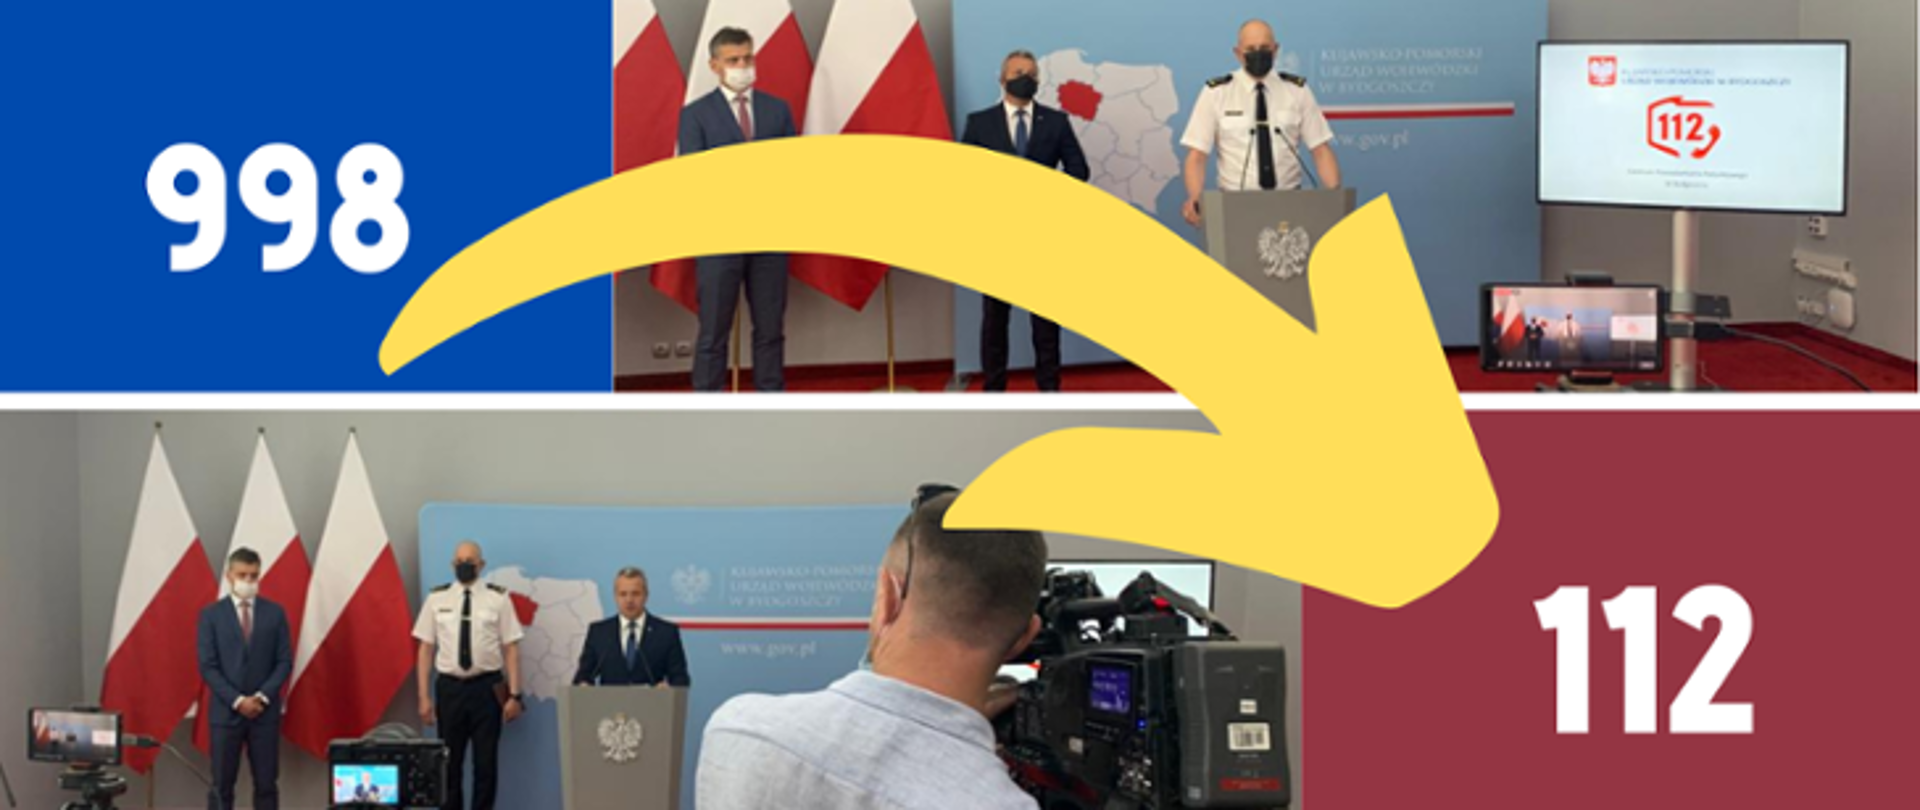 Kolaż zdjęć przedstawiający 2 zdjęcia z konferencji prasowej oraz numery 998 na niebieskim tle i 112 na czerwonym tle połączone żółtą strzałką.